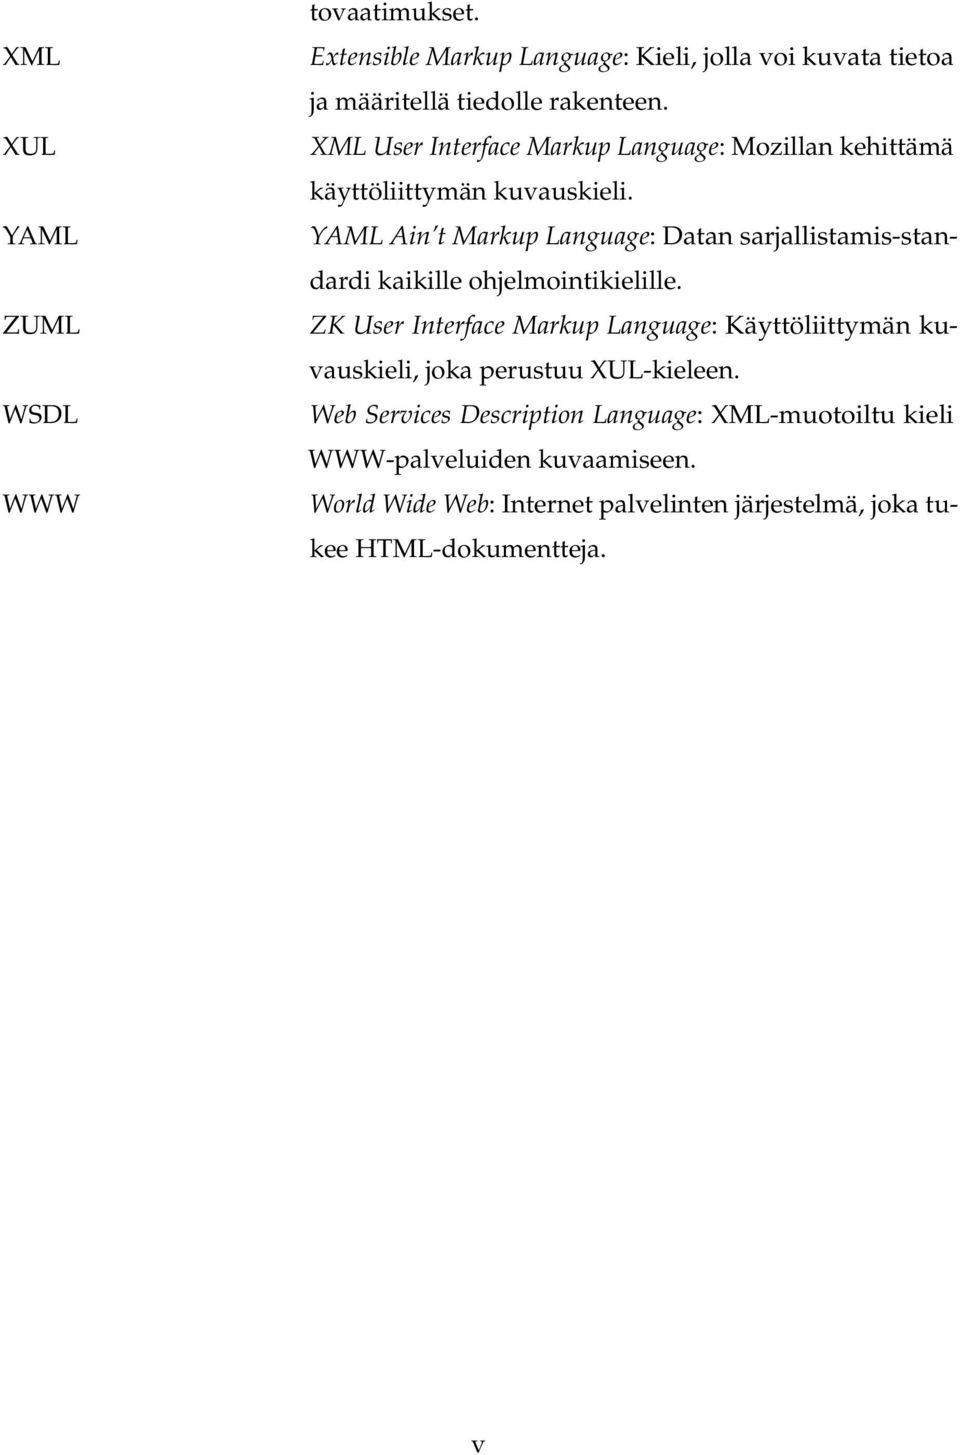 YAML Ain t Markup Language: Datan sarjallistamis-standardi kaikille ohjelmointikielille.